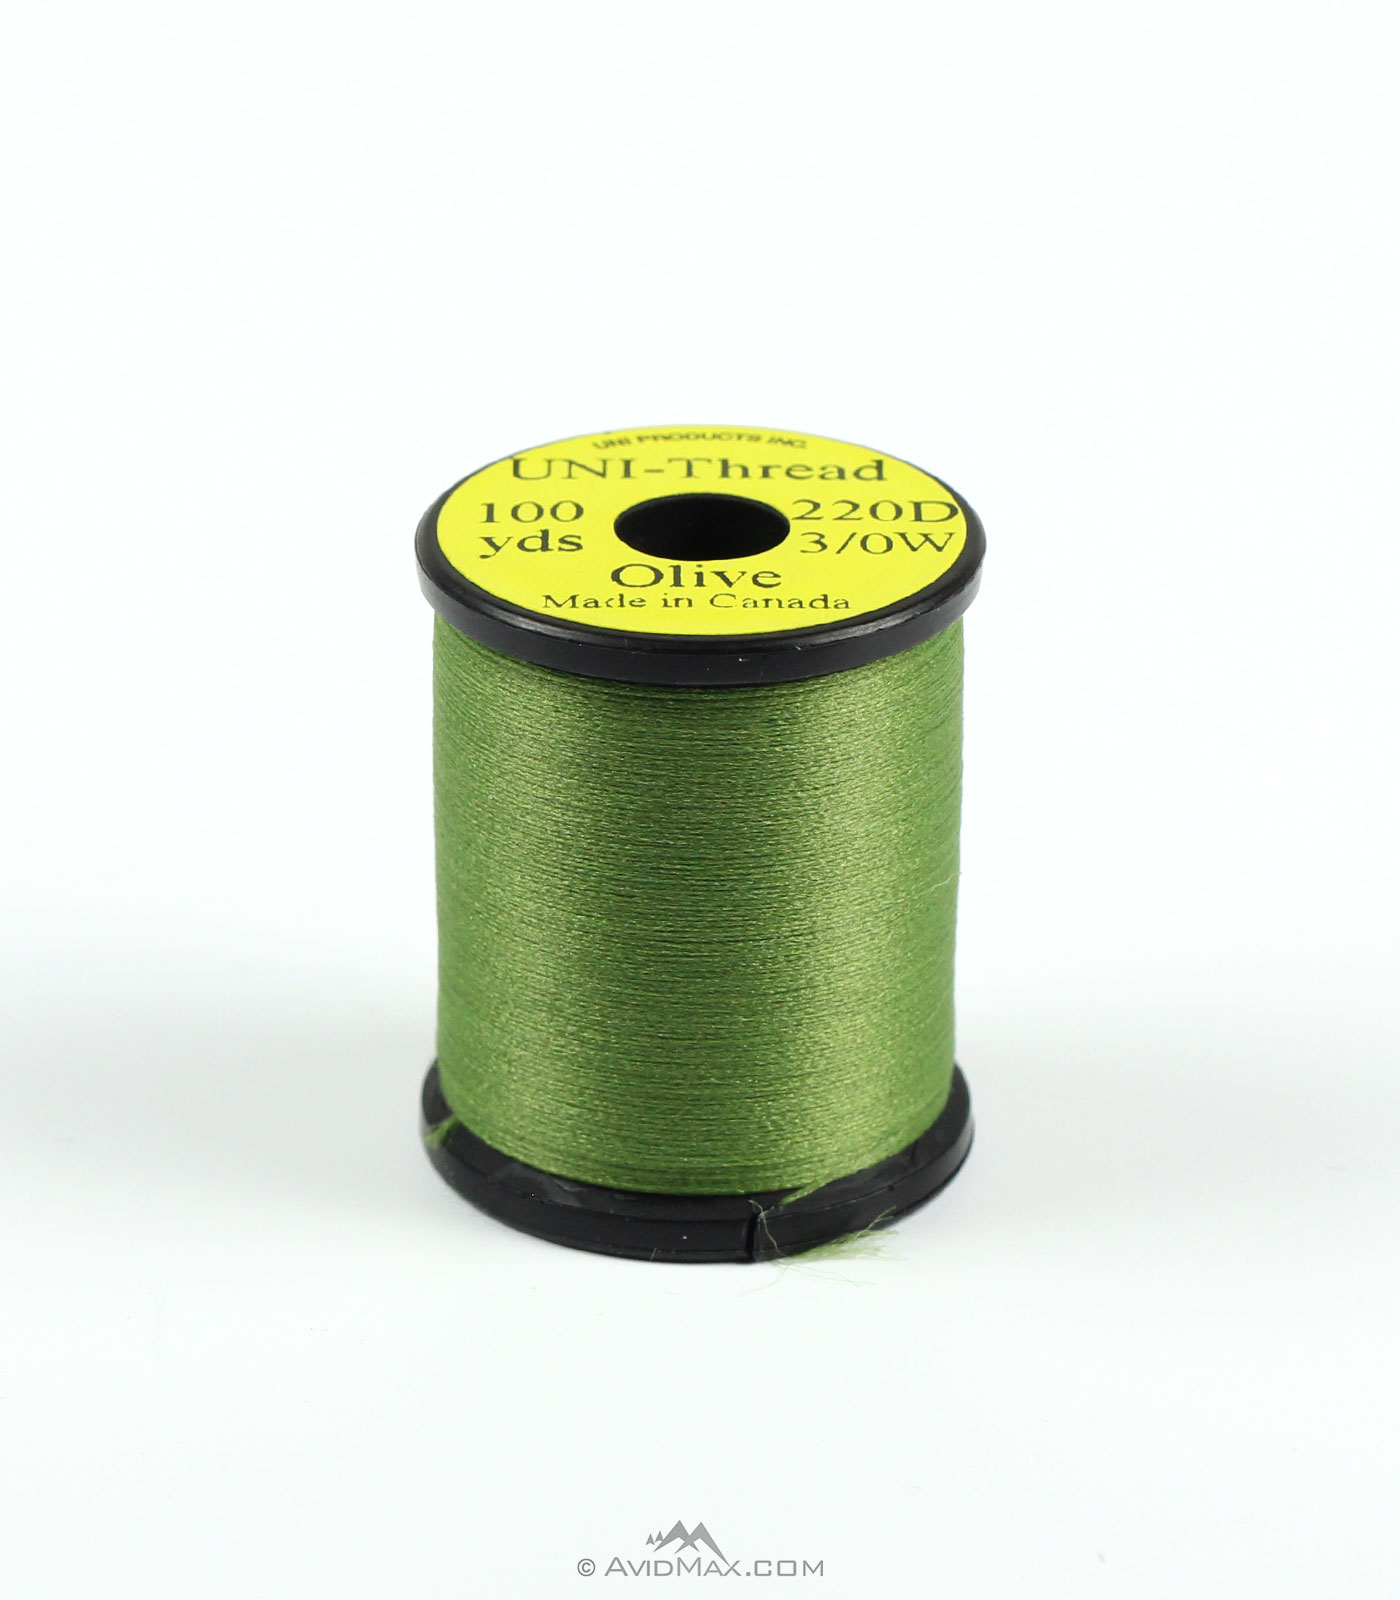 Uni 3/0 Waxed Thread - Olive